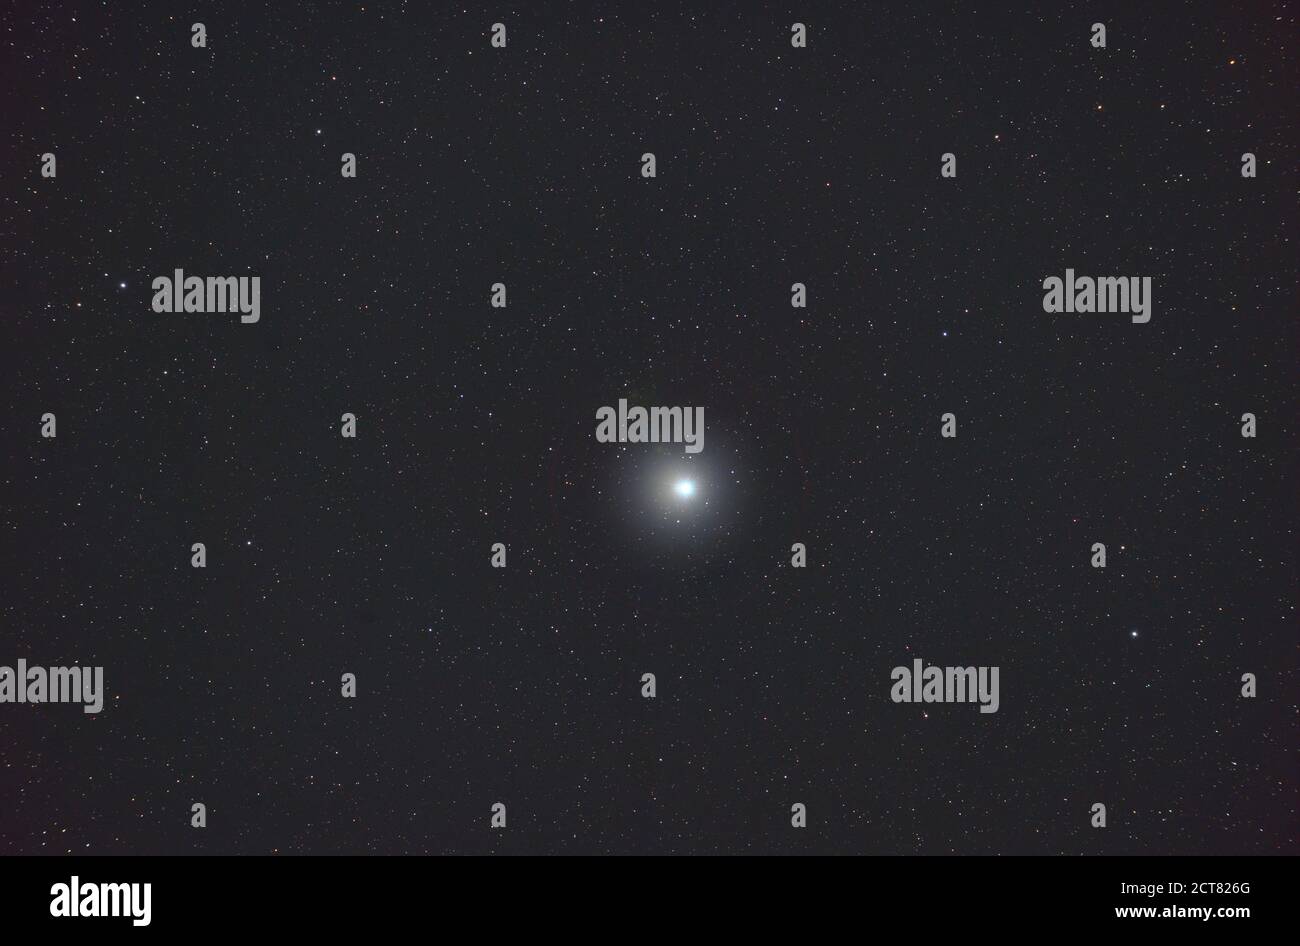 Der Stern Altair im Sternbild Aquila, 16.7 Lichtjahre vom Planeten Erde und  12. Hellster Stern am Nachthimmel. Fotografiert durch Teleskop aus London  UK mit Nikon Z7, 12 Minuten Belichtung Stockfotografie - Alamy